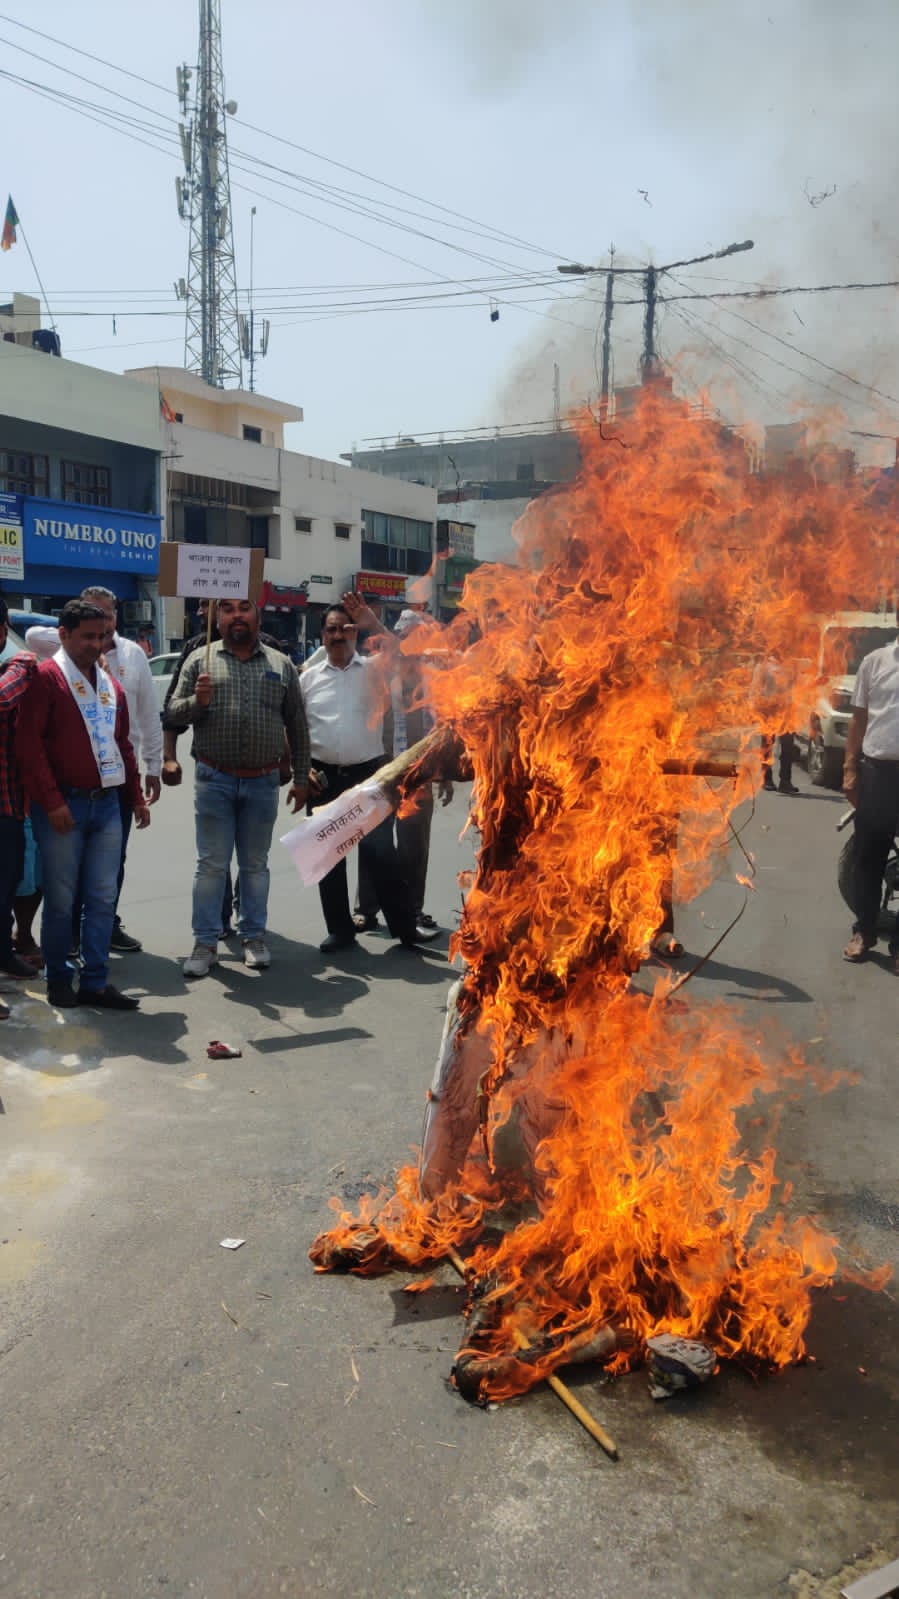 भाजपा कार्यकर्ताओ के द्वारा दिल्ली मुख्यमंत्री के घर पर तोड़फोड़ के विरोध में आम आदमी कार्यकर्ताओं हरिद्वार में प्रदर्शन